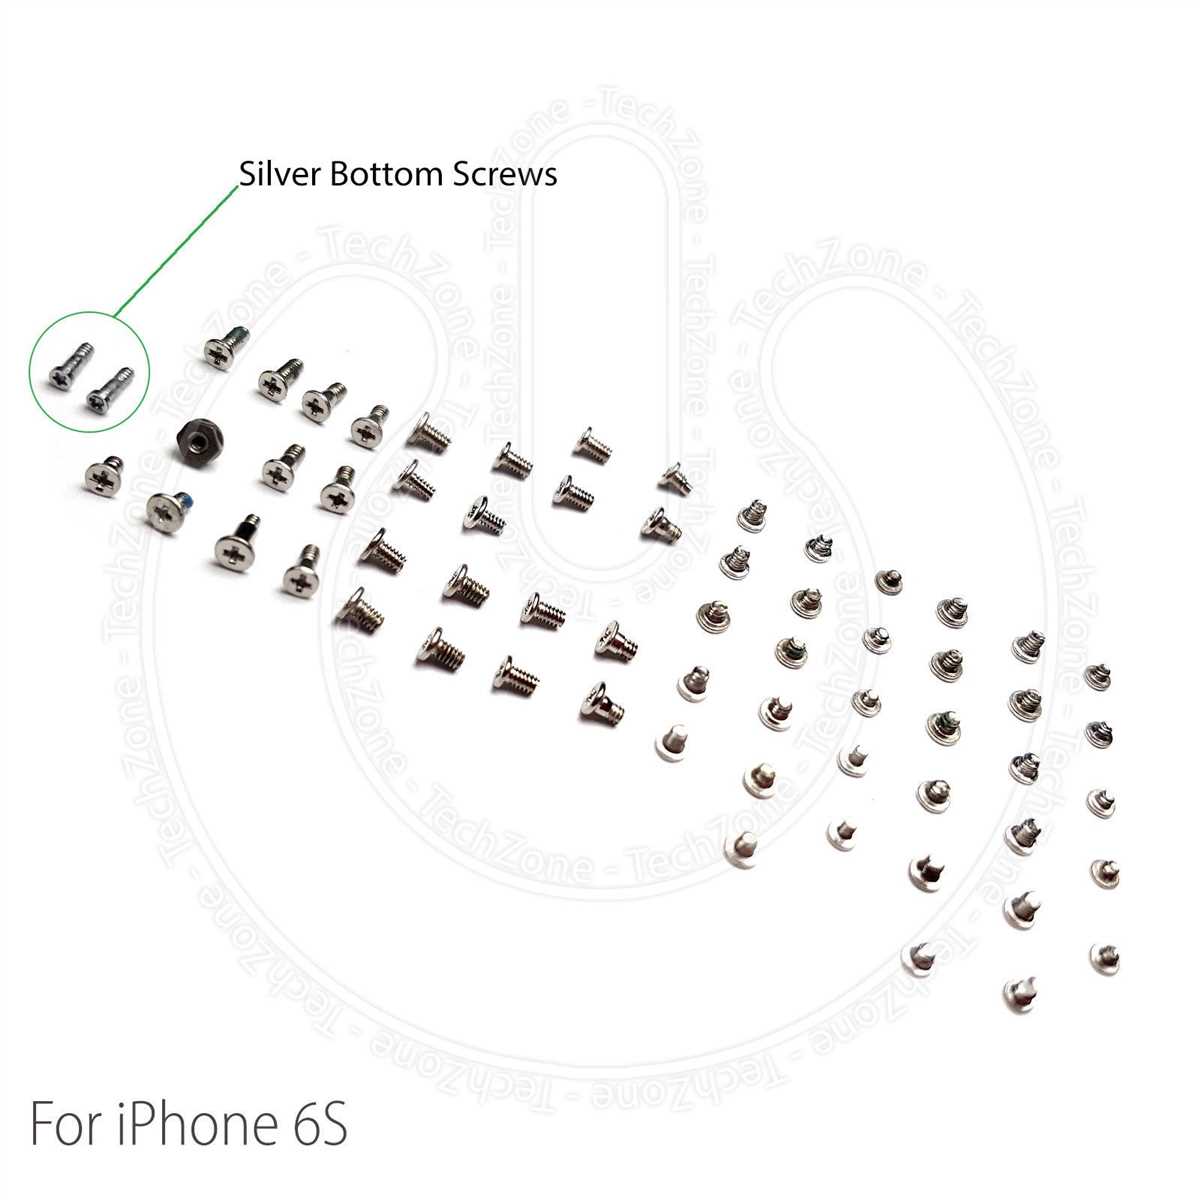 Iphone 6s screw diagram